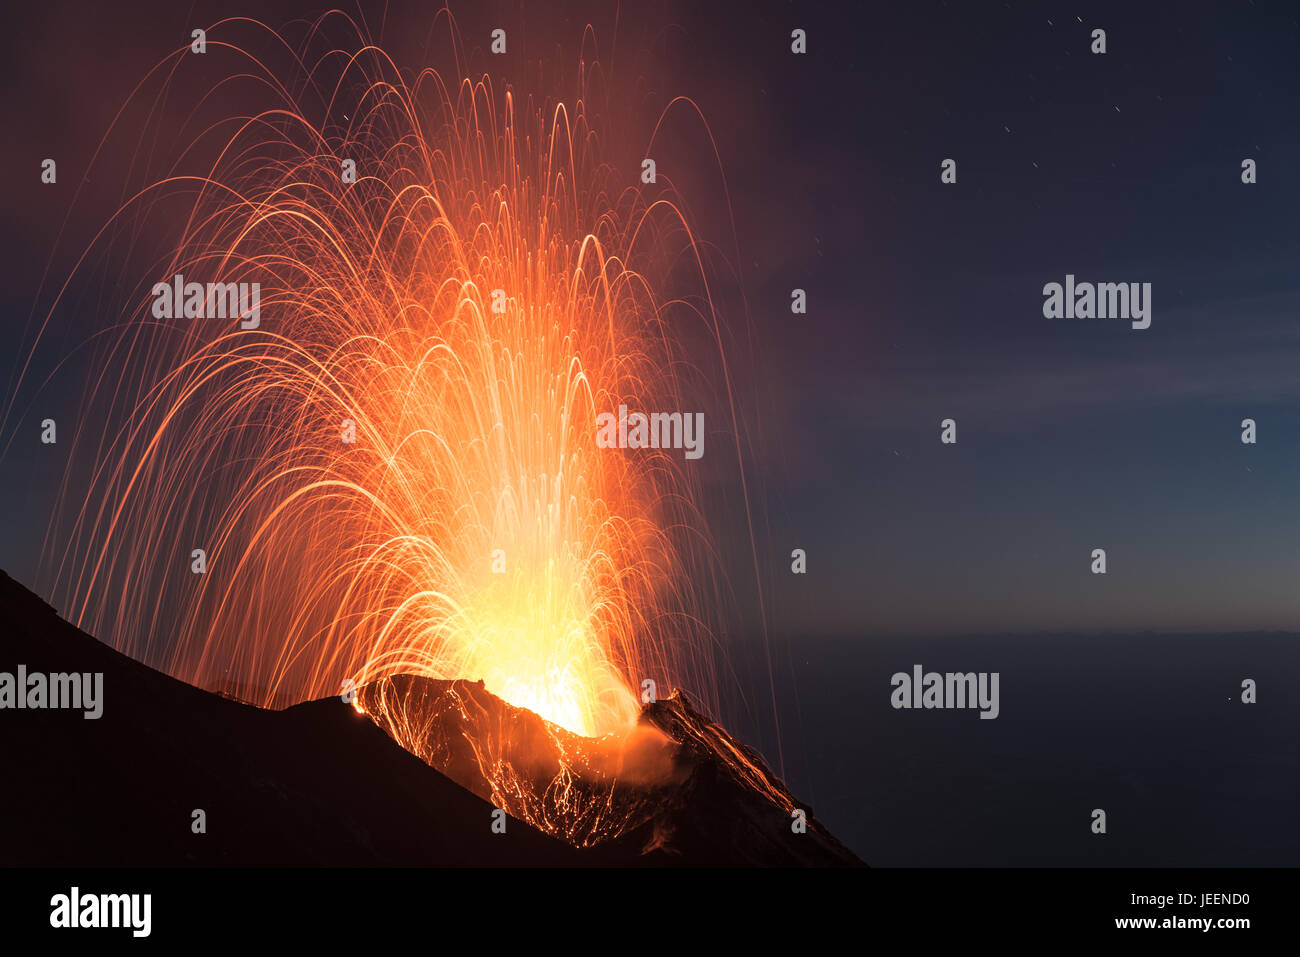 Stromboliane forte eruzione vulcanica dal vulcano di Stromboli (Isole Eolie Lipari, Italia) di notte, crateri illuminati dalla luna, Giugno 2017 Foto Stock